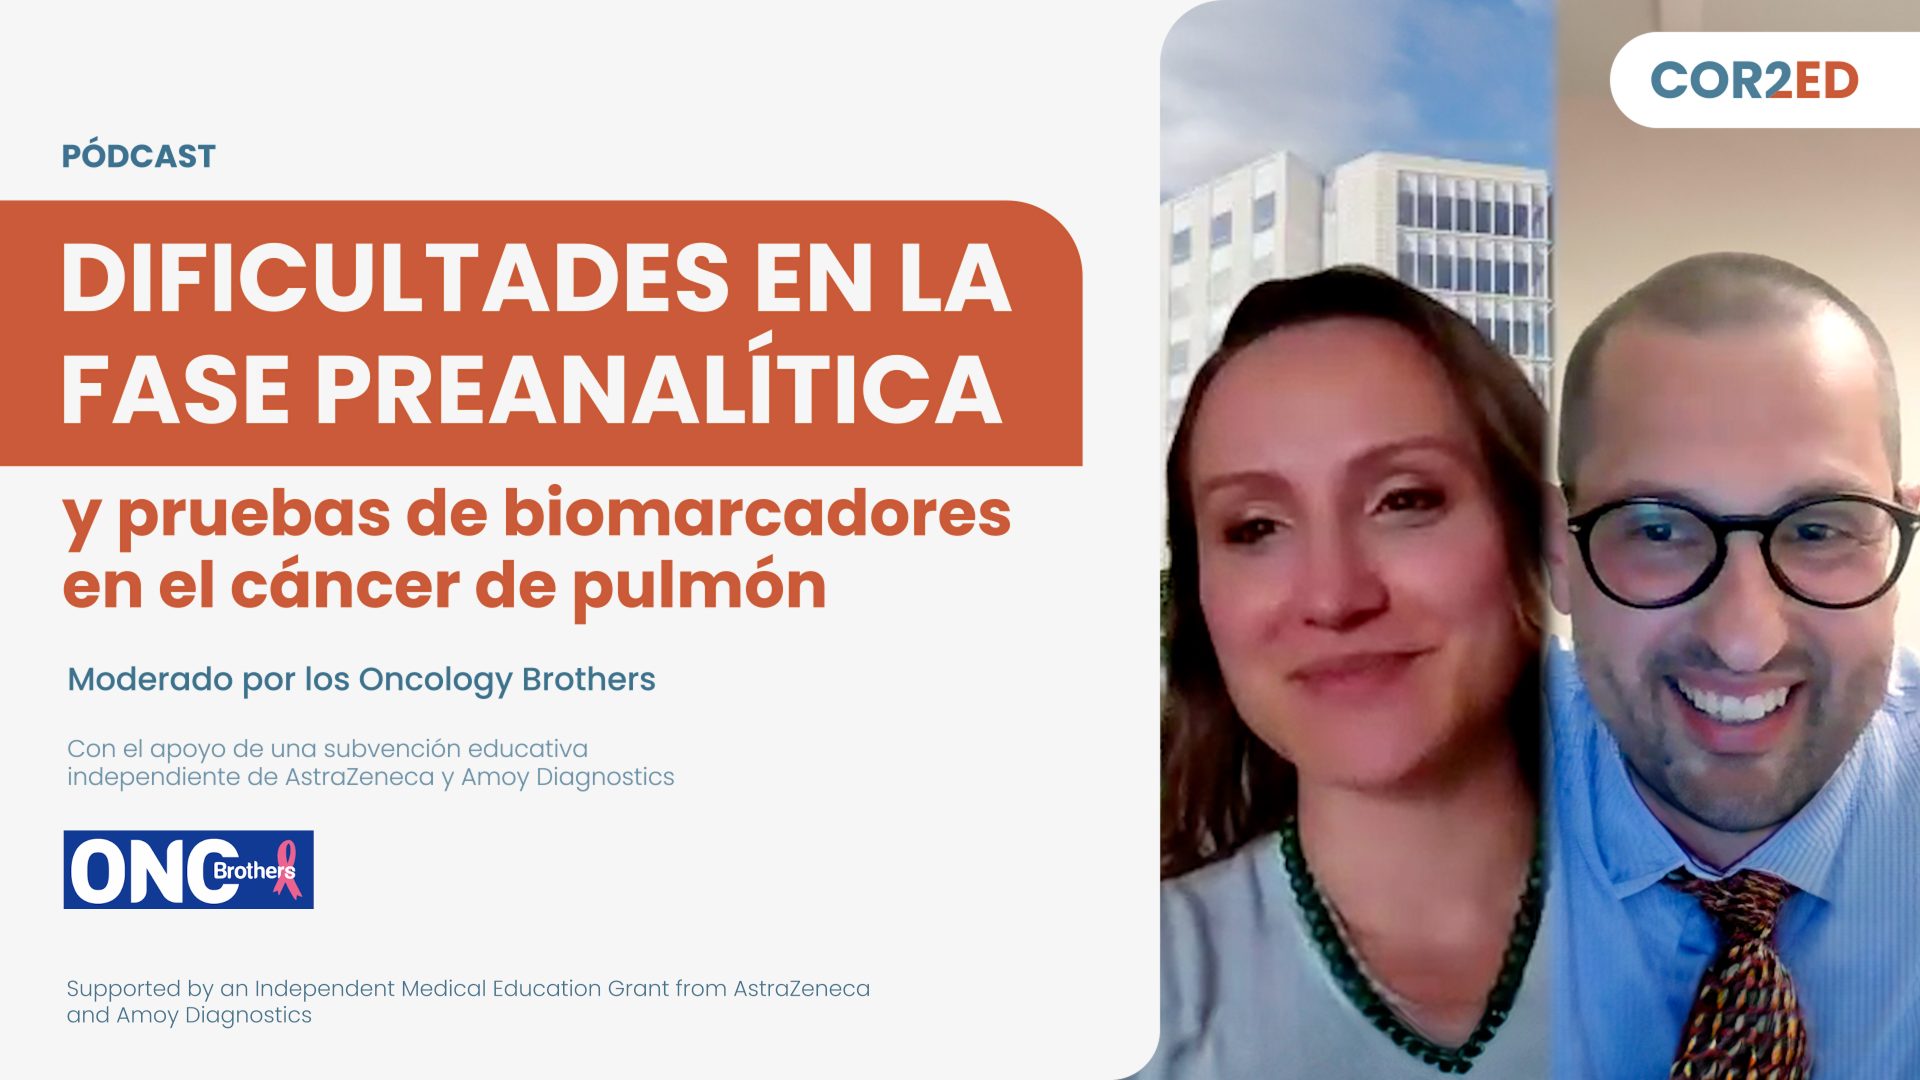 Cáncer de pulmón: Dificultades en la fase preanalítica y pruebas de biomarcadores (Spanish)